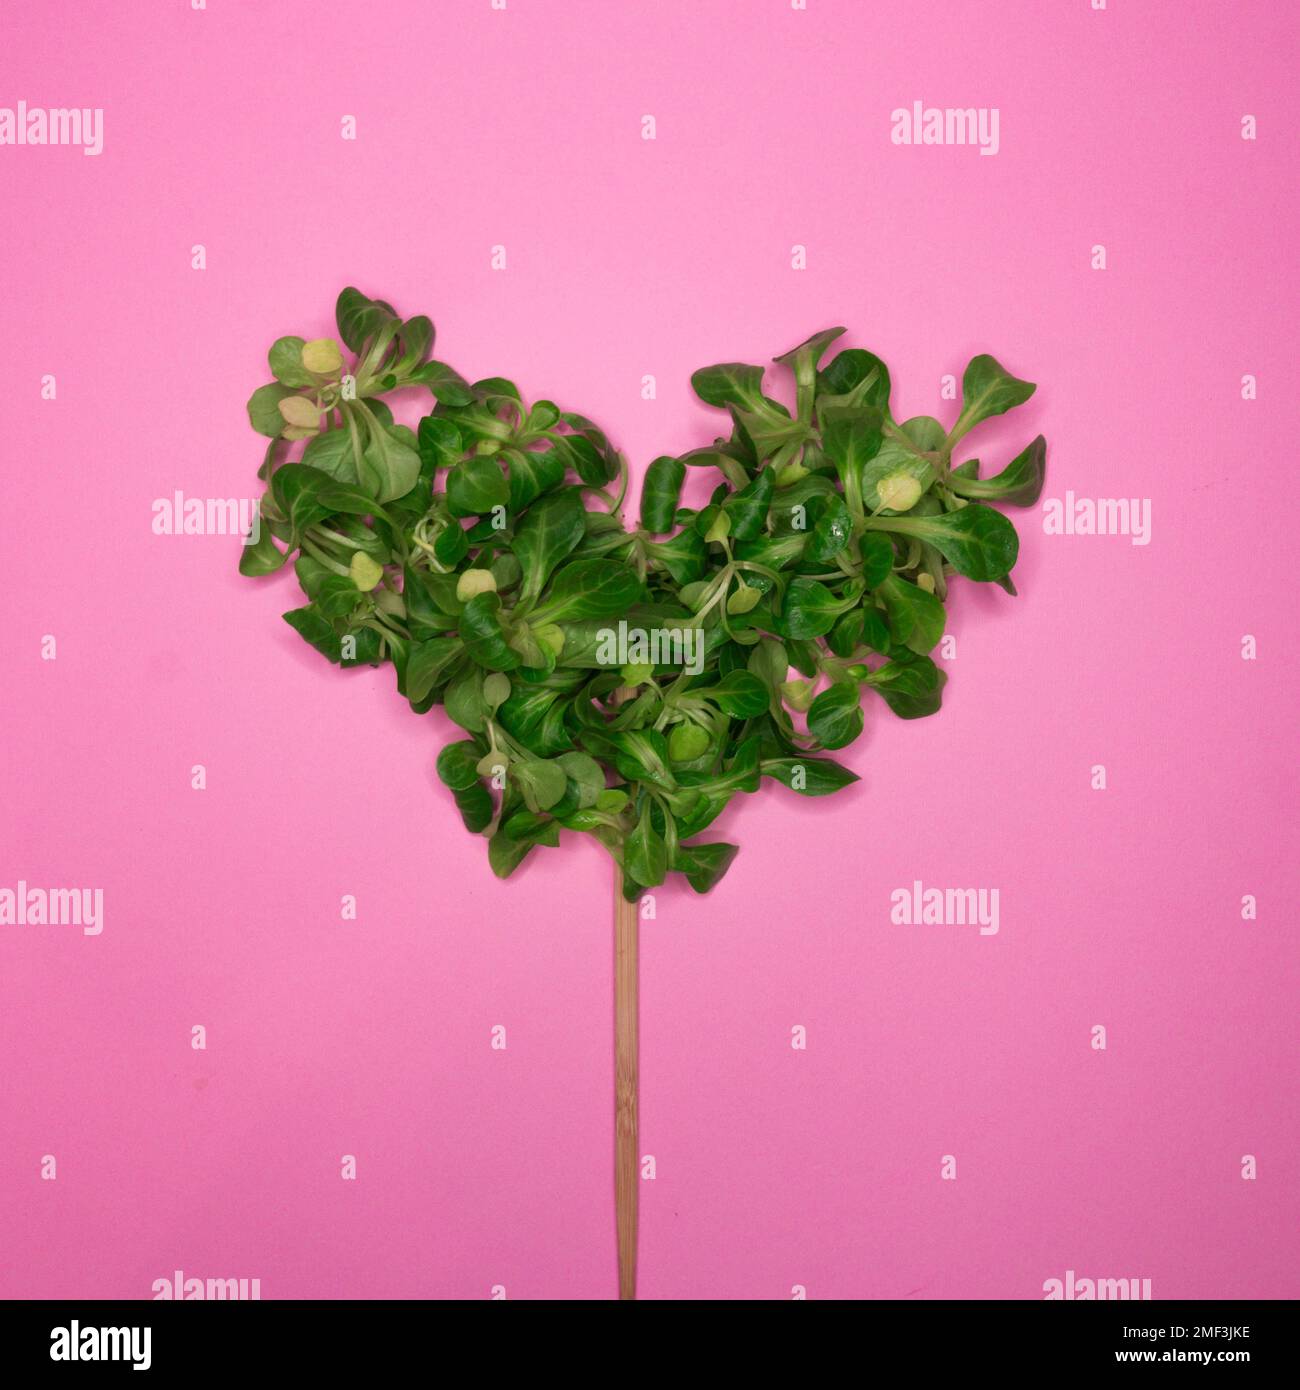 Coeur fait de feuilles vertes avec un bâton de bois sur fond rose. Concept de durabilité. Jour de la Terre. Responsabilité environnementale Banque D'Images